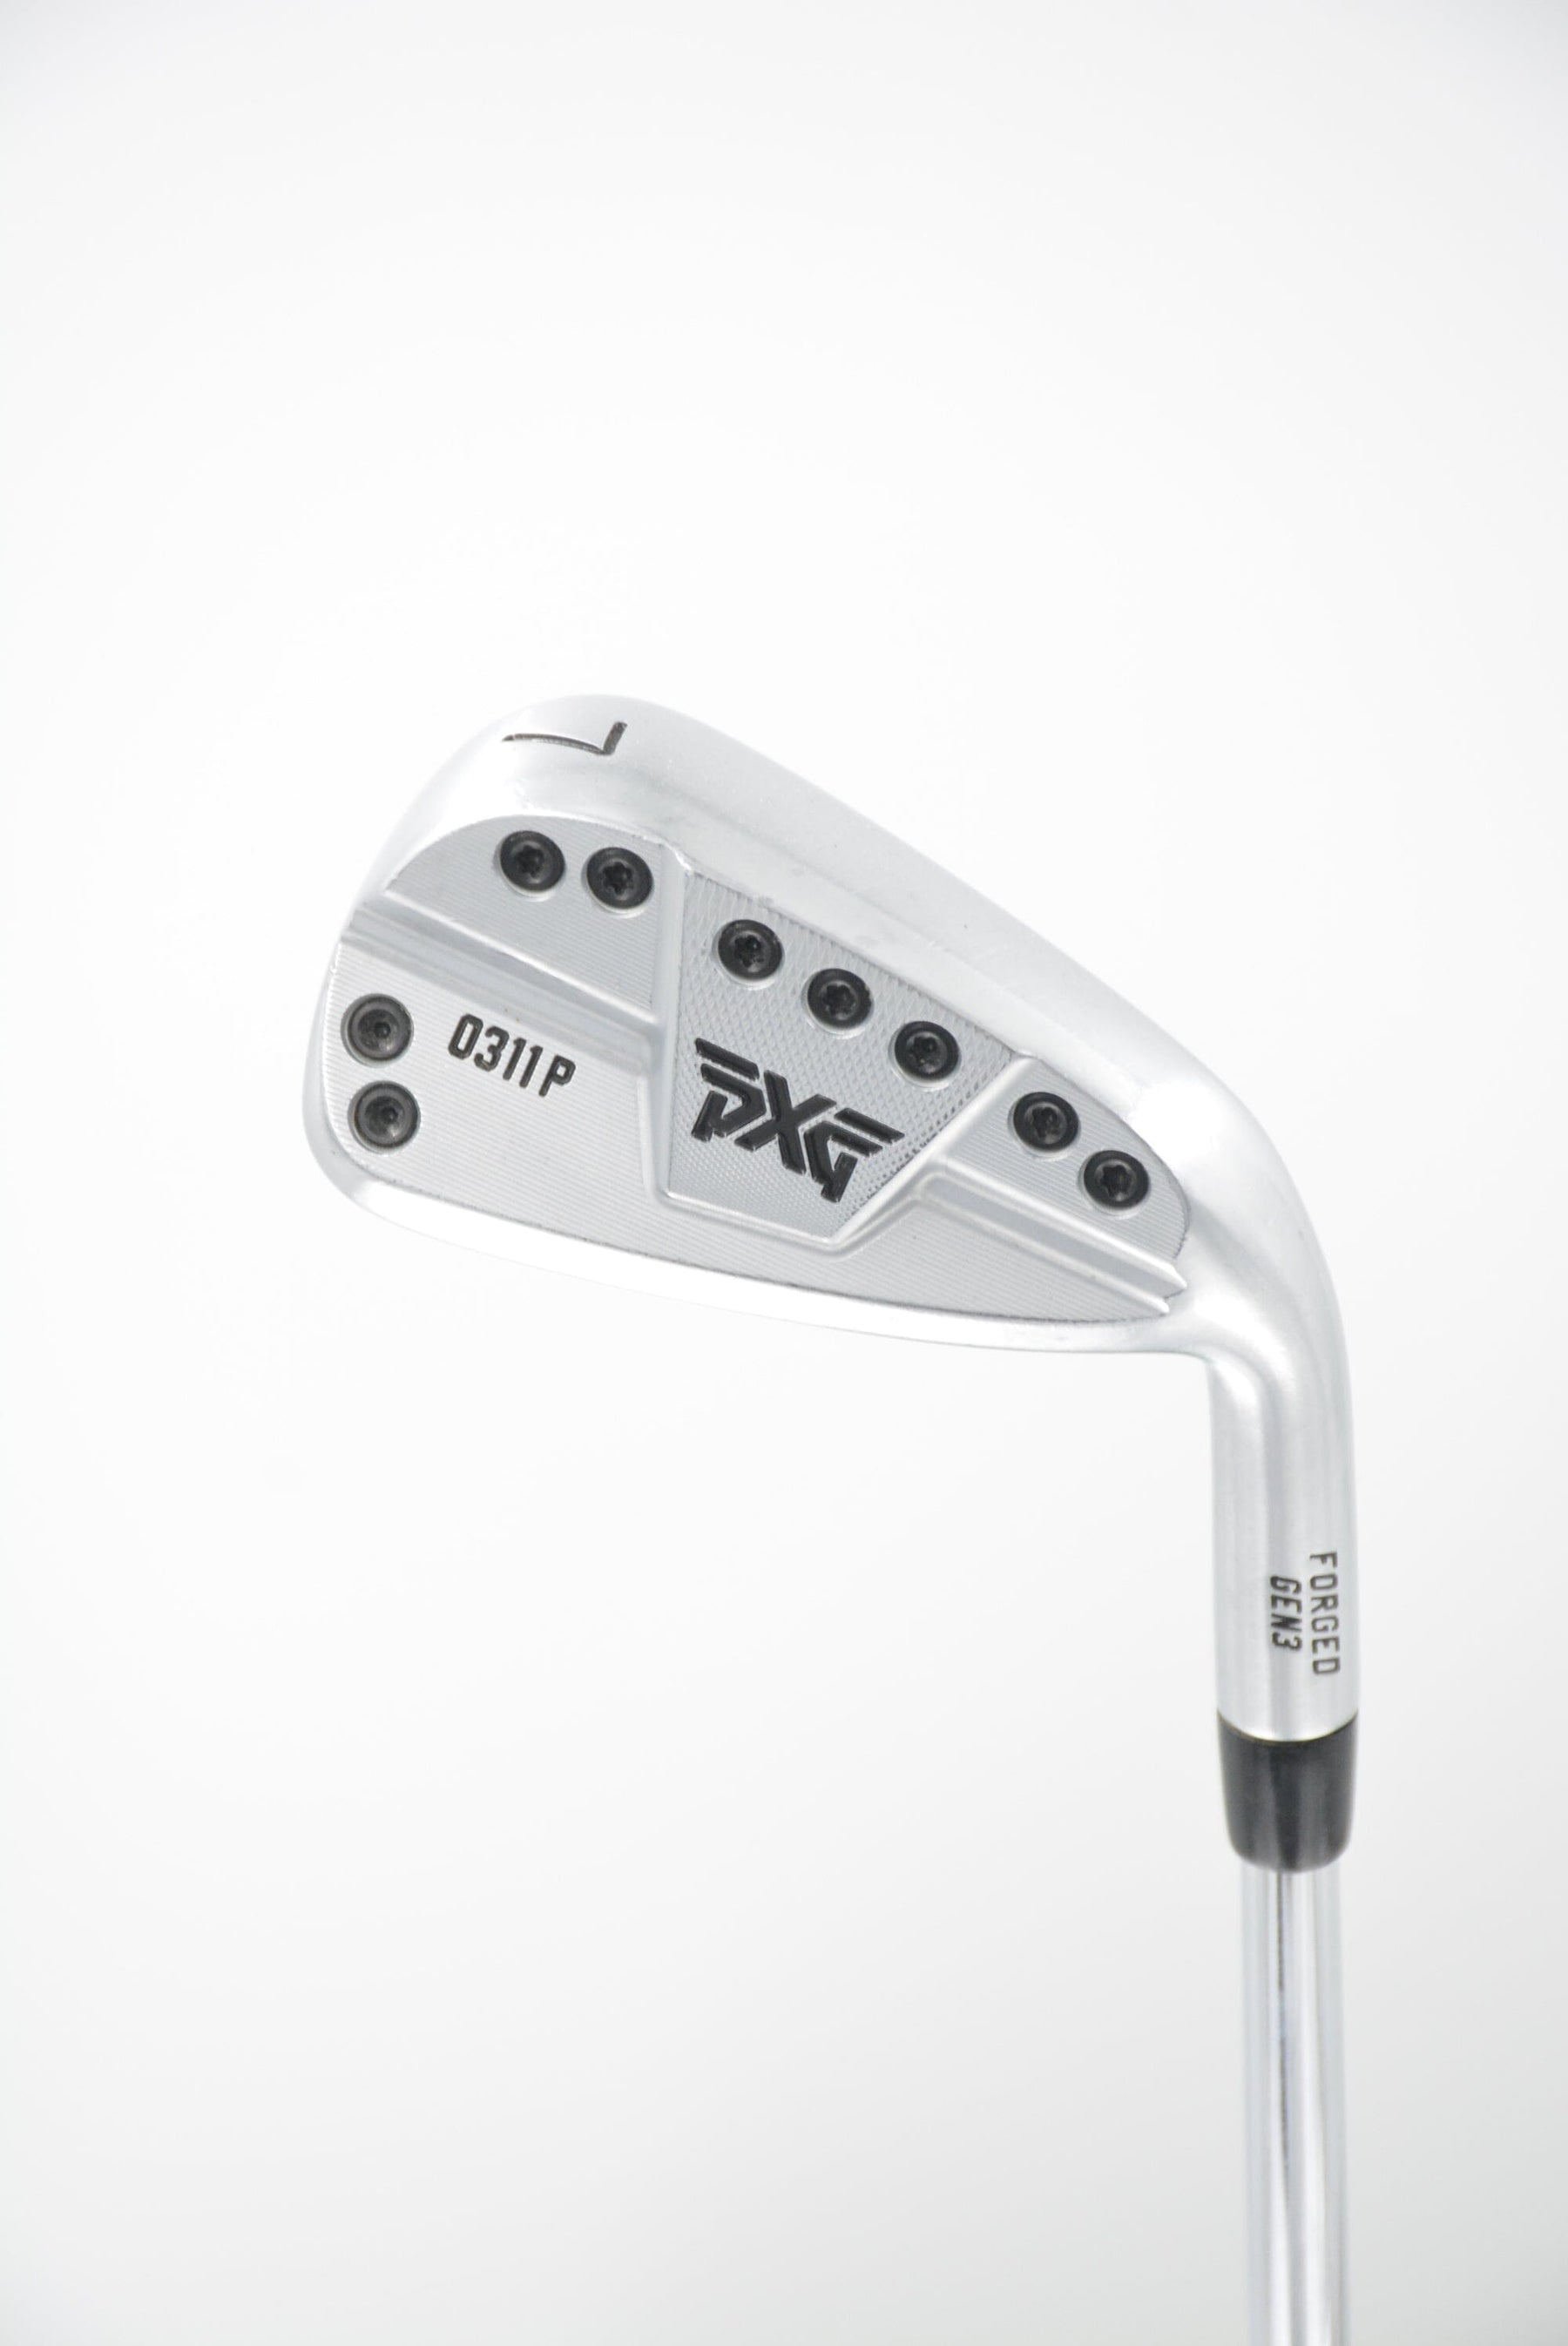 PXG 0311P Gen 3 7 Iron R Flex Golf Clubs GolfRoots 